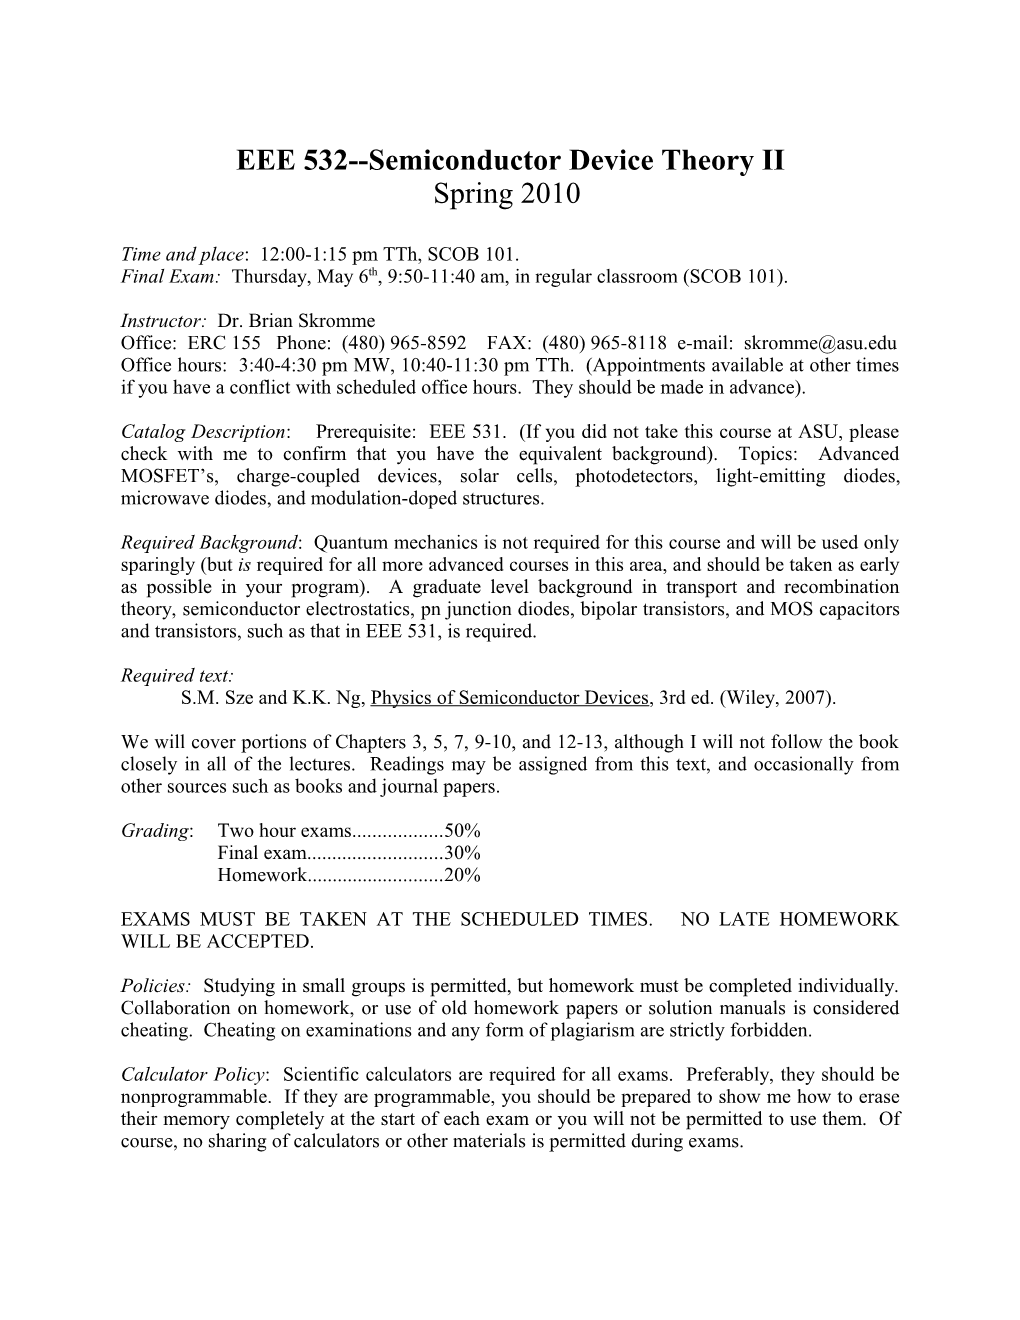 EEE 532 Semiconductor Device Theory II